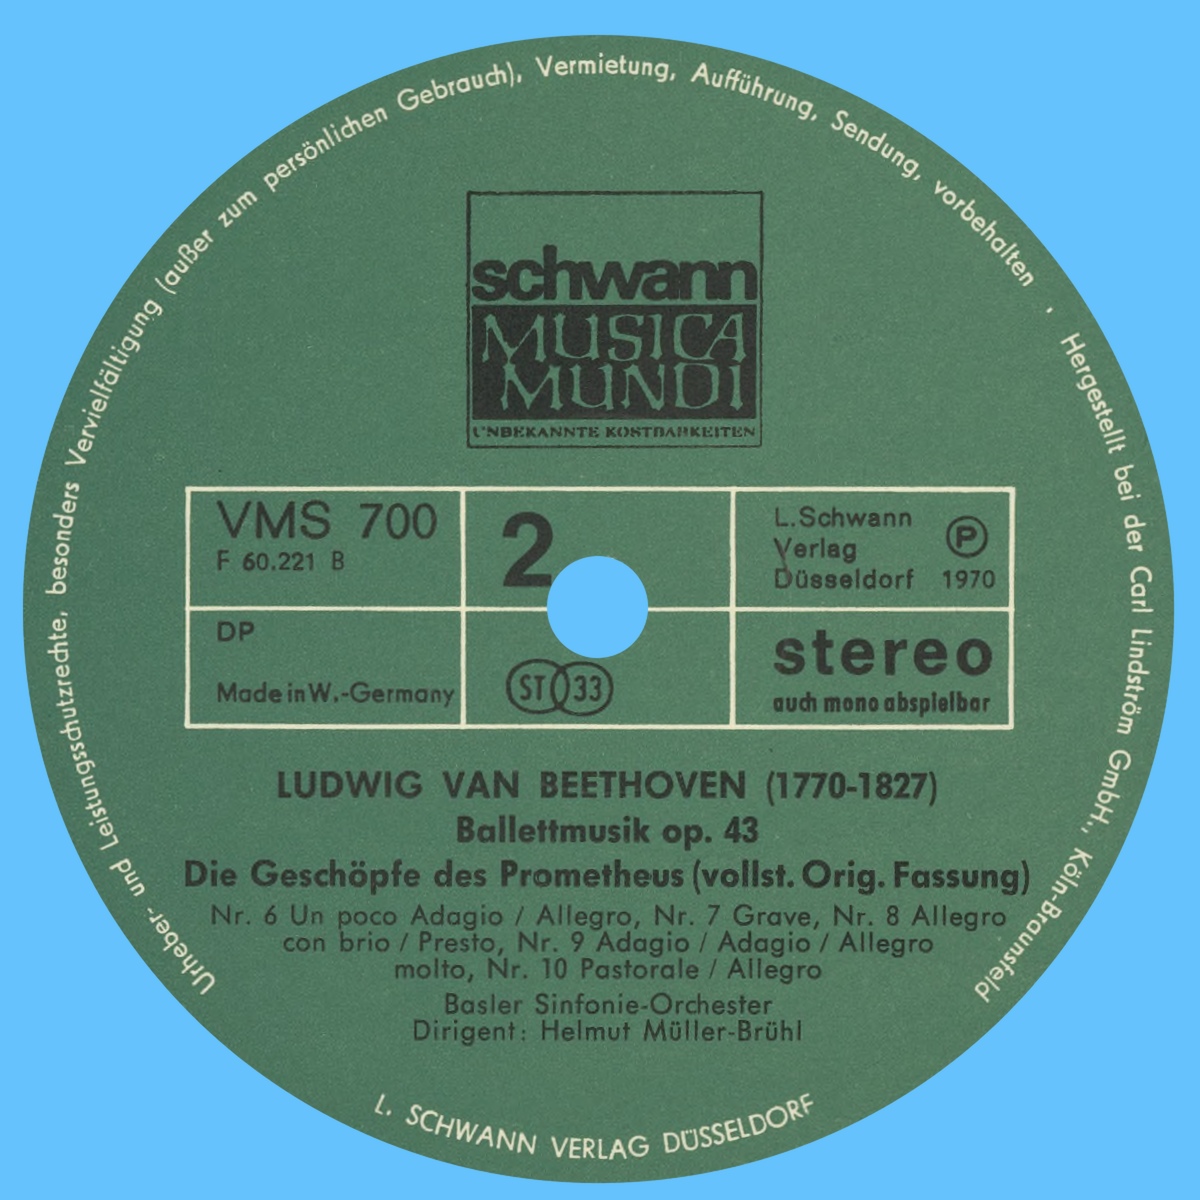 Étiquette verso du premier disque de l'album Schwann Musica Mundi VMS 700/701